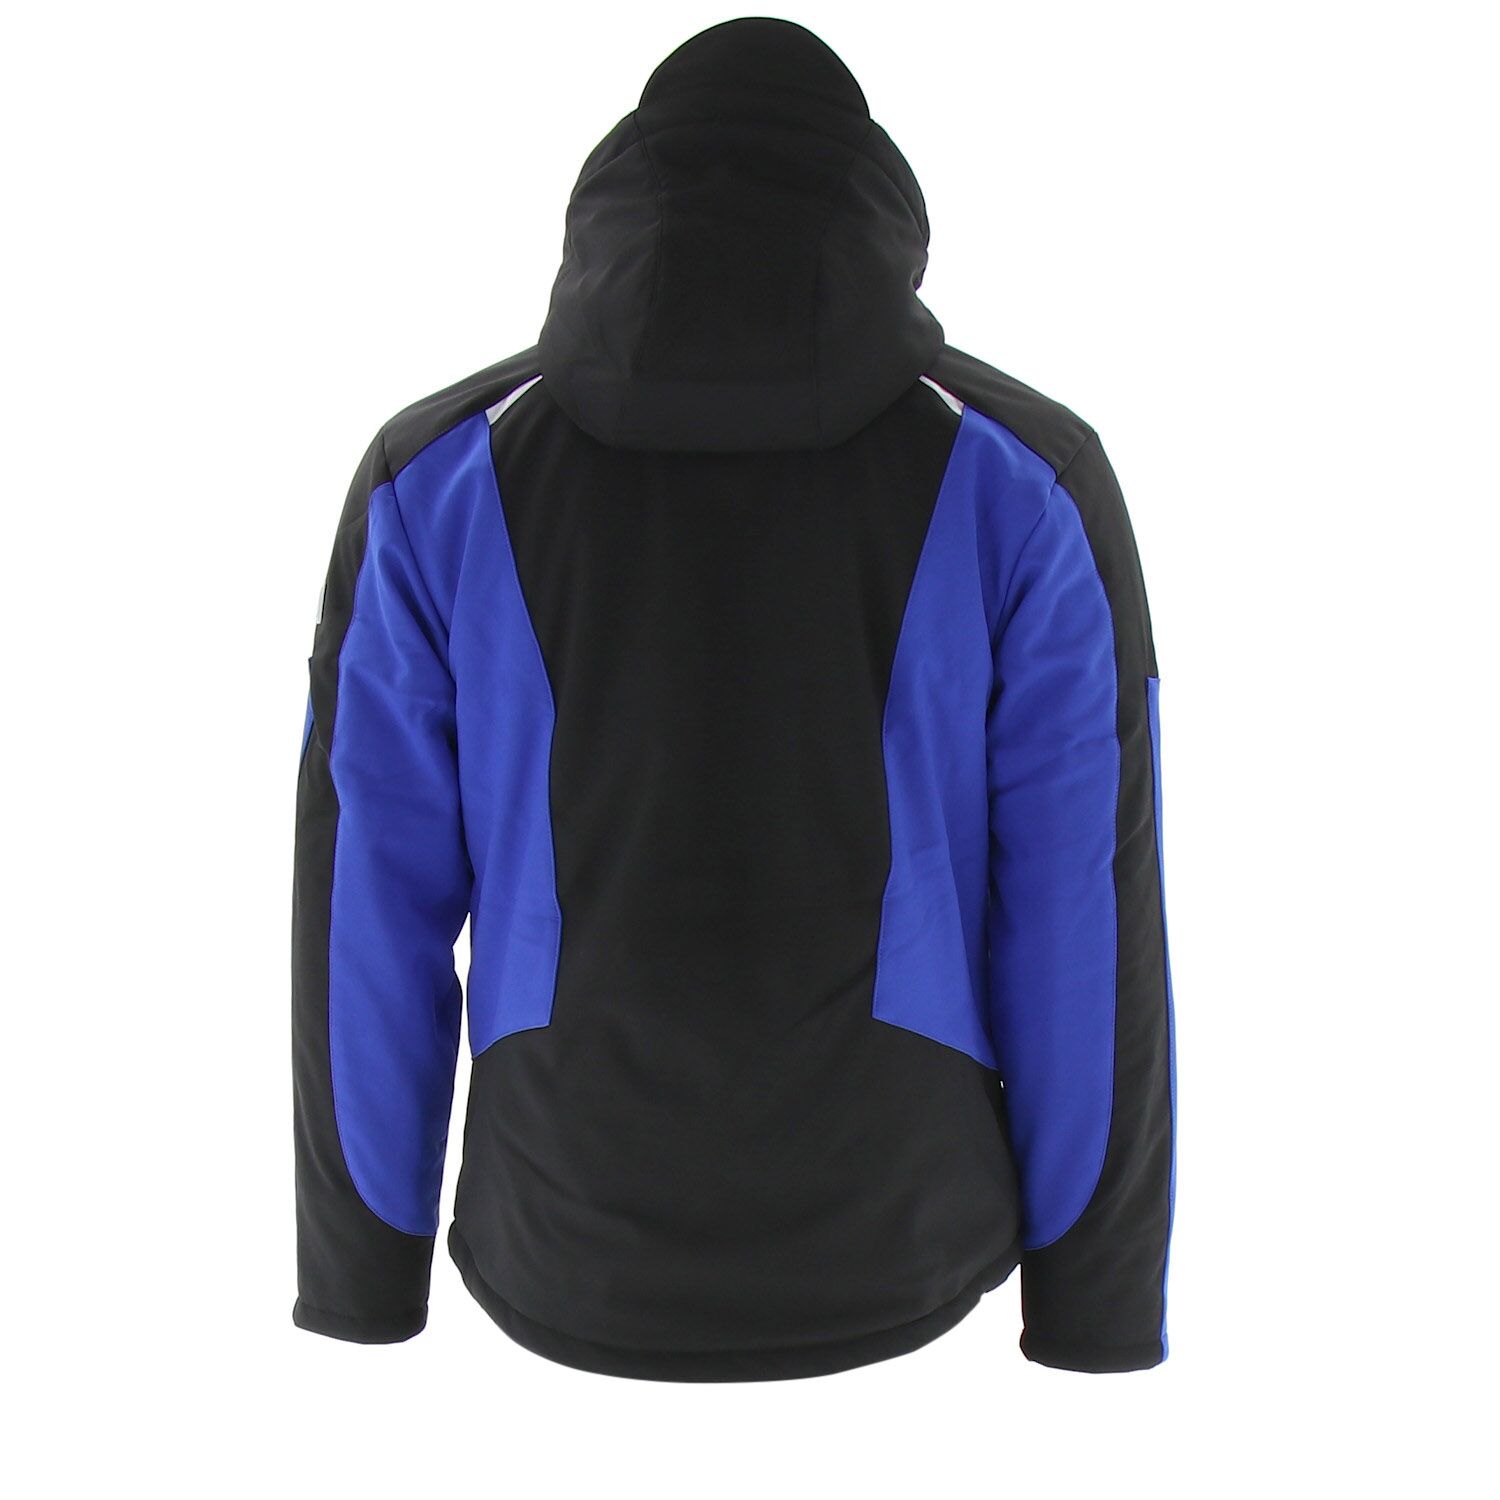 KÜBLER Winter Softshell Jacke XL 1041 Form schwarz/kornblau